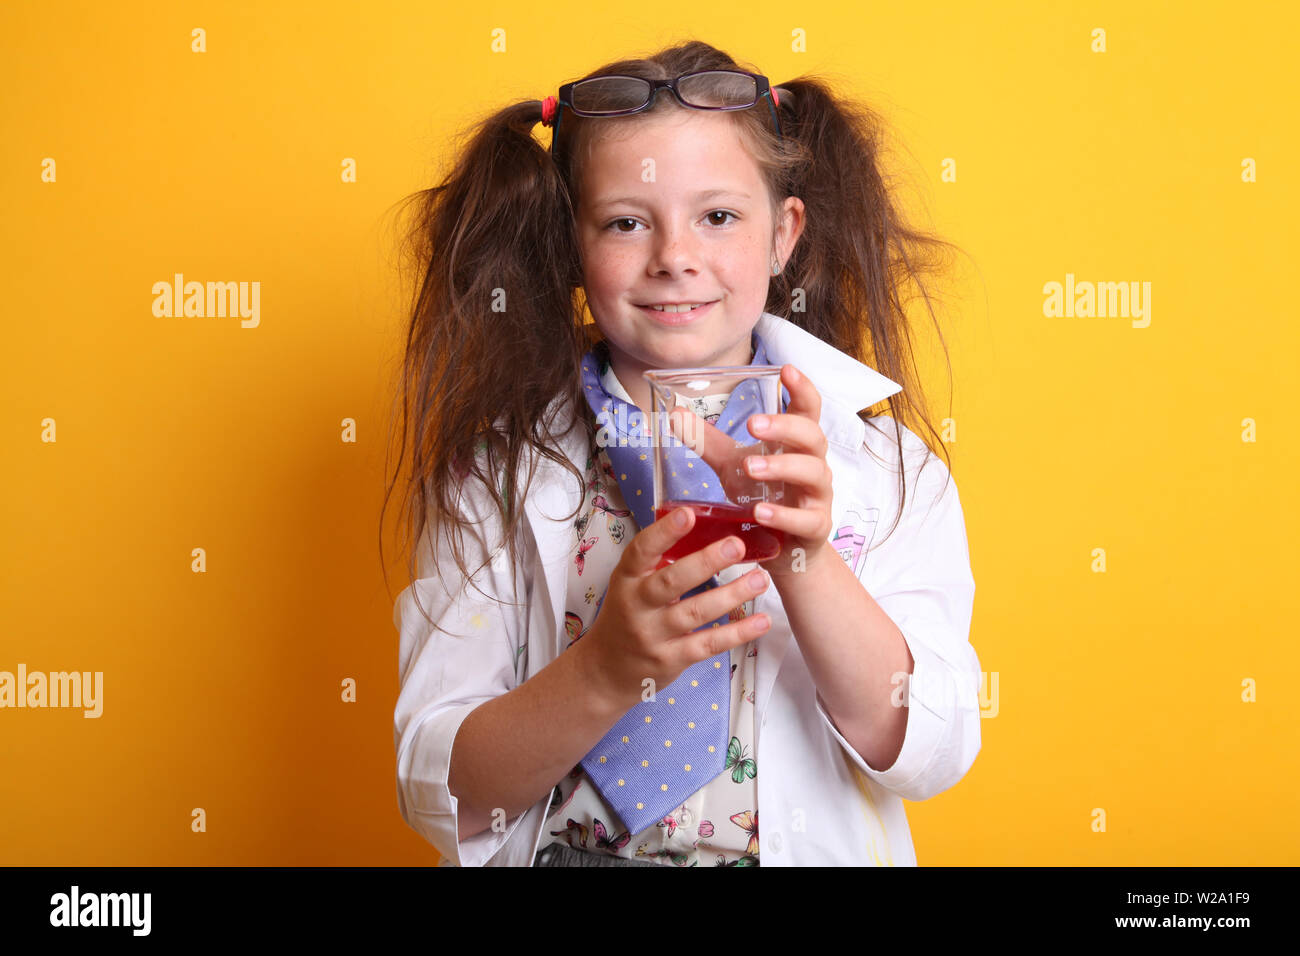 Signor - Scienza Geek giovane ragazza / femmina - 7 anni - bambino sorridente in telecamera tenendo la scienza di borosilicato becher di prodotti chimici di colore rosso su sfondo giallo Foto Stock